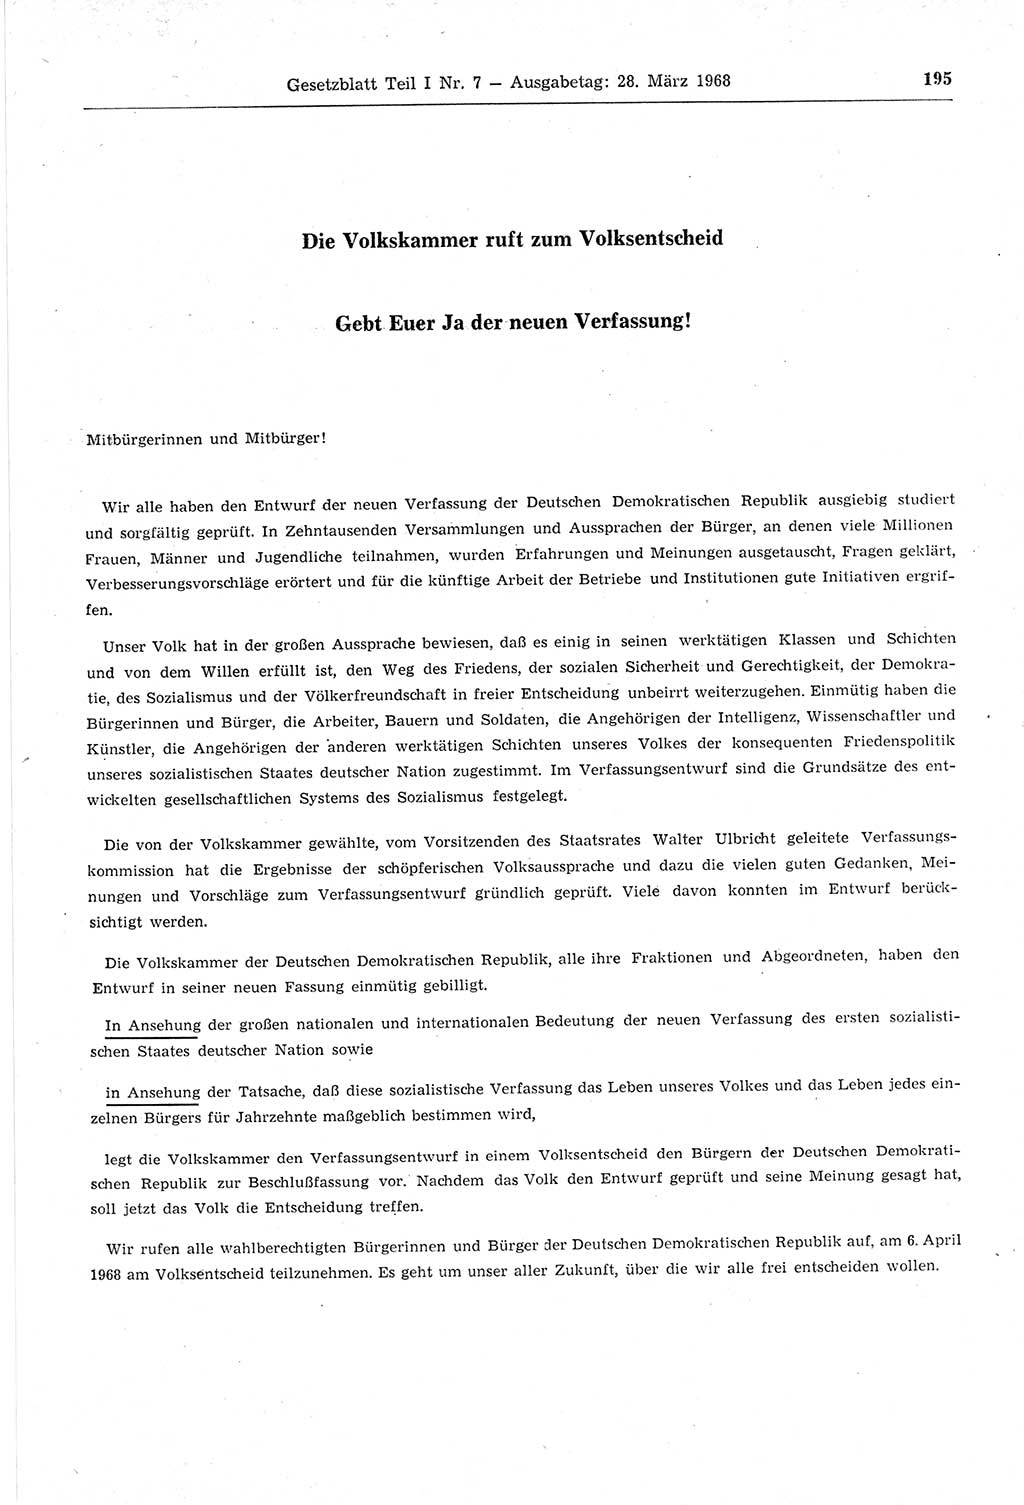 Gesetzblatt (GBl.) der Deutschen Demokratischen Republik (DDR) Teil Ⅰ 1968, Seite 195 (GBl. DDR Ⅰ 1968, S. 195)